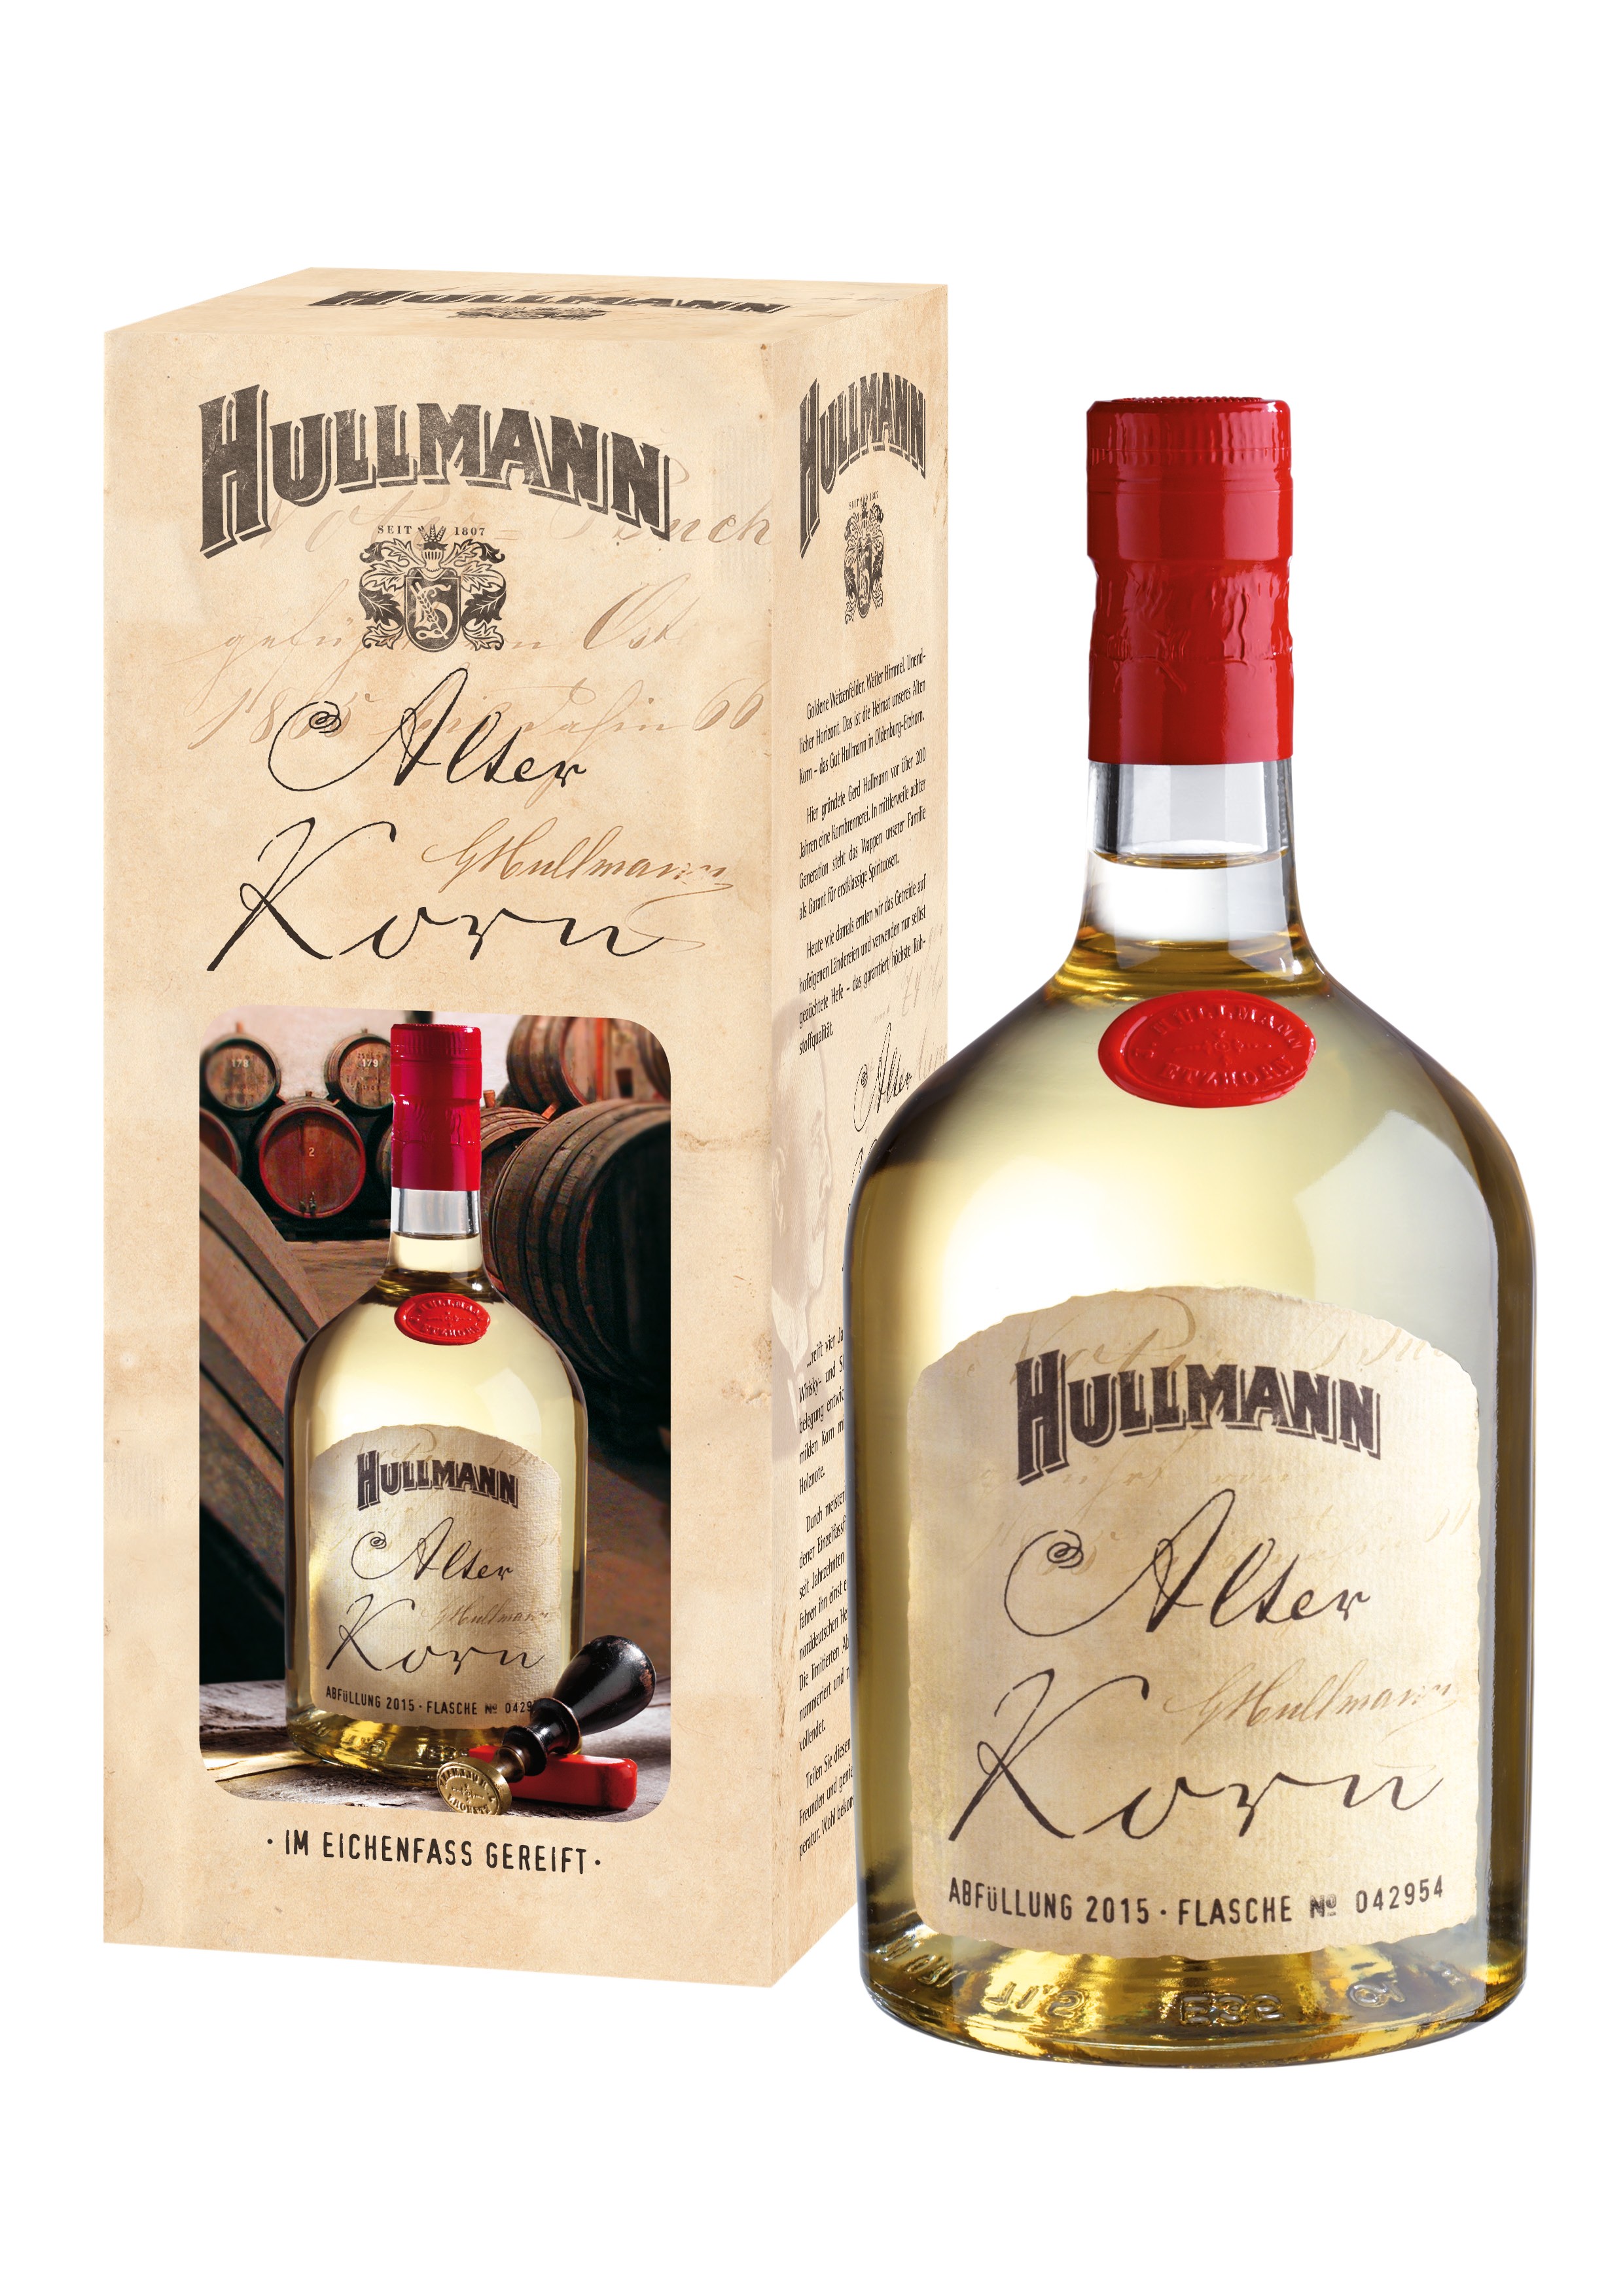 Hullmann - Alter Korn